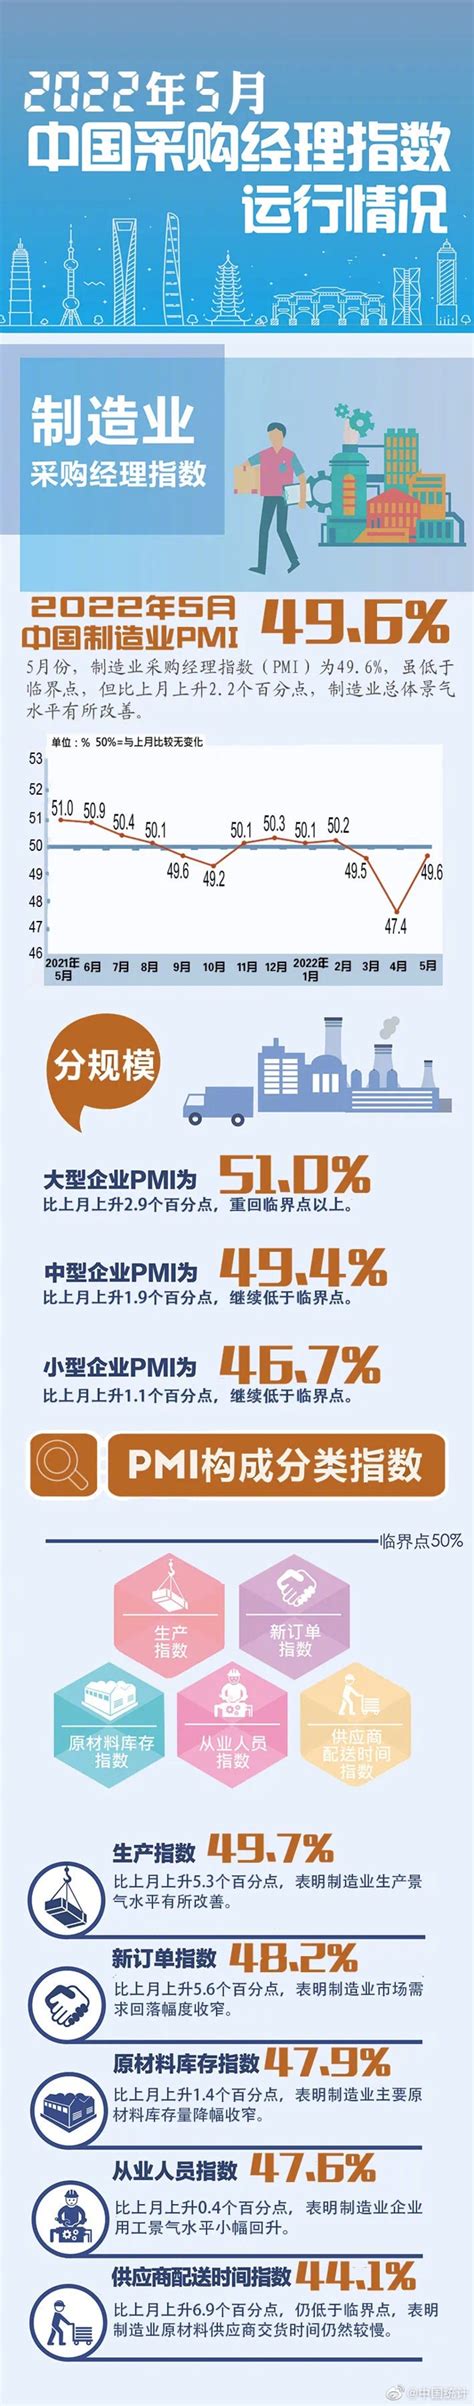 一图看懂2022年5月PMI数据_四川在线